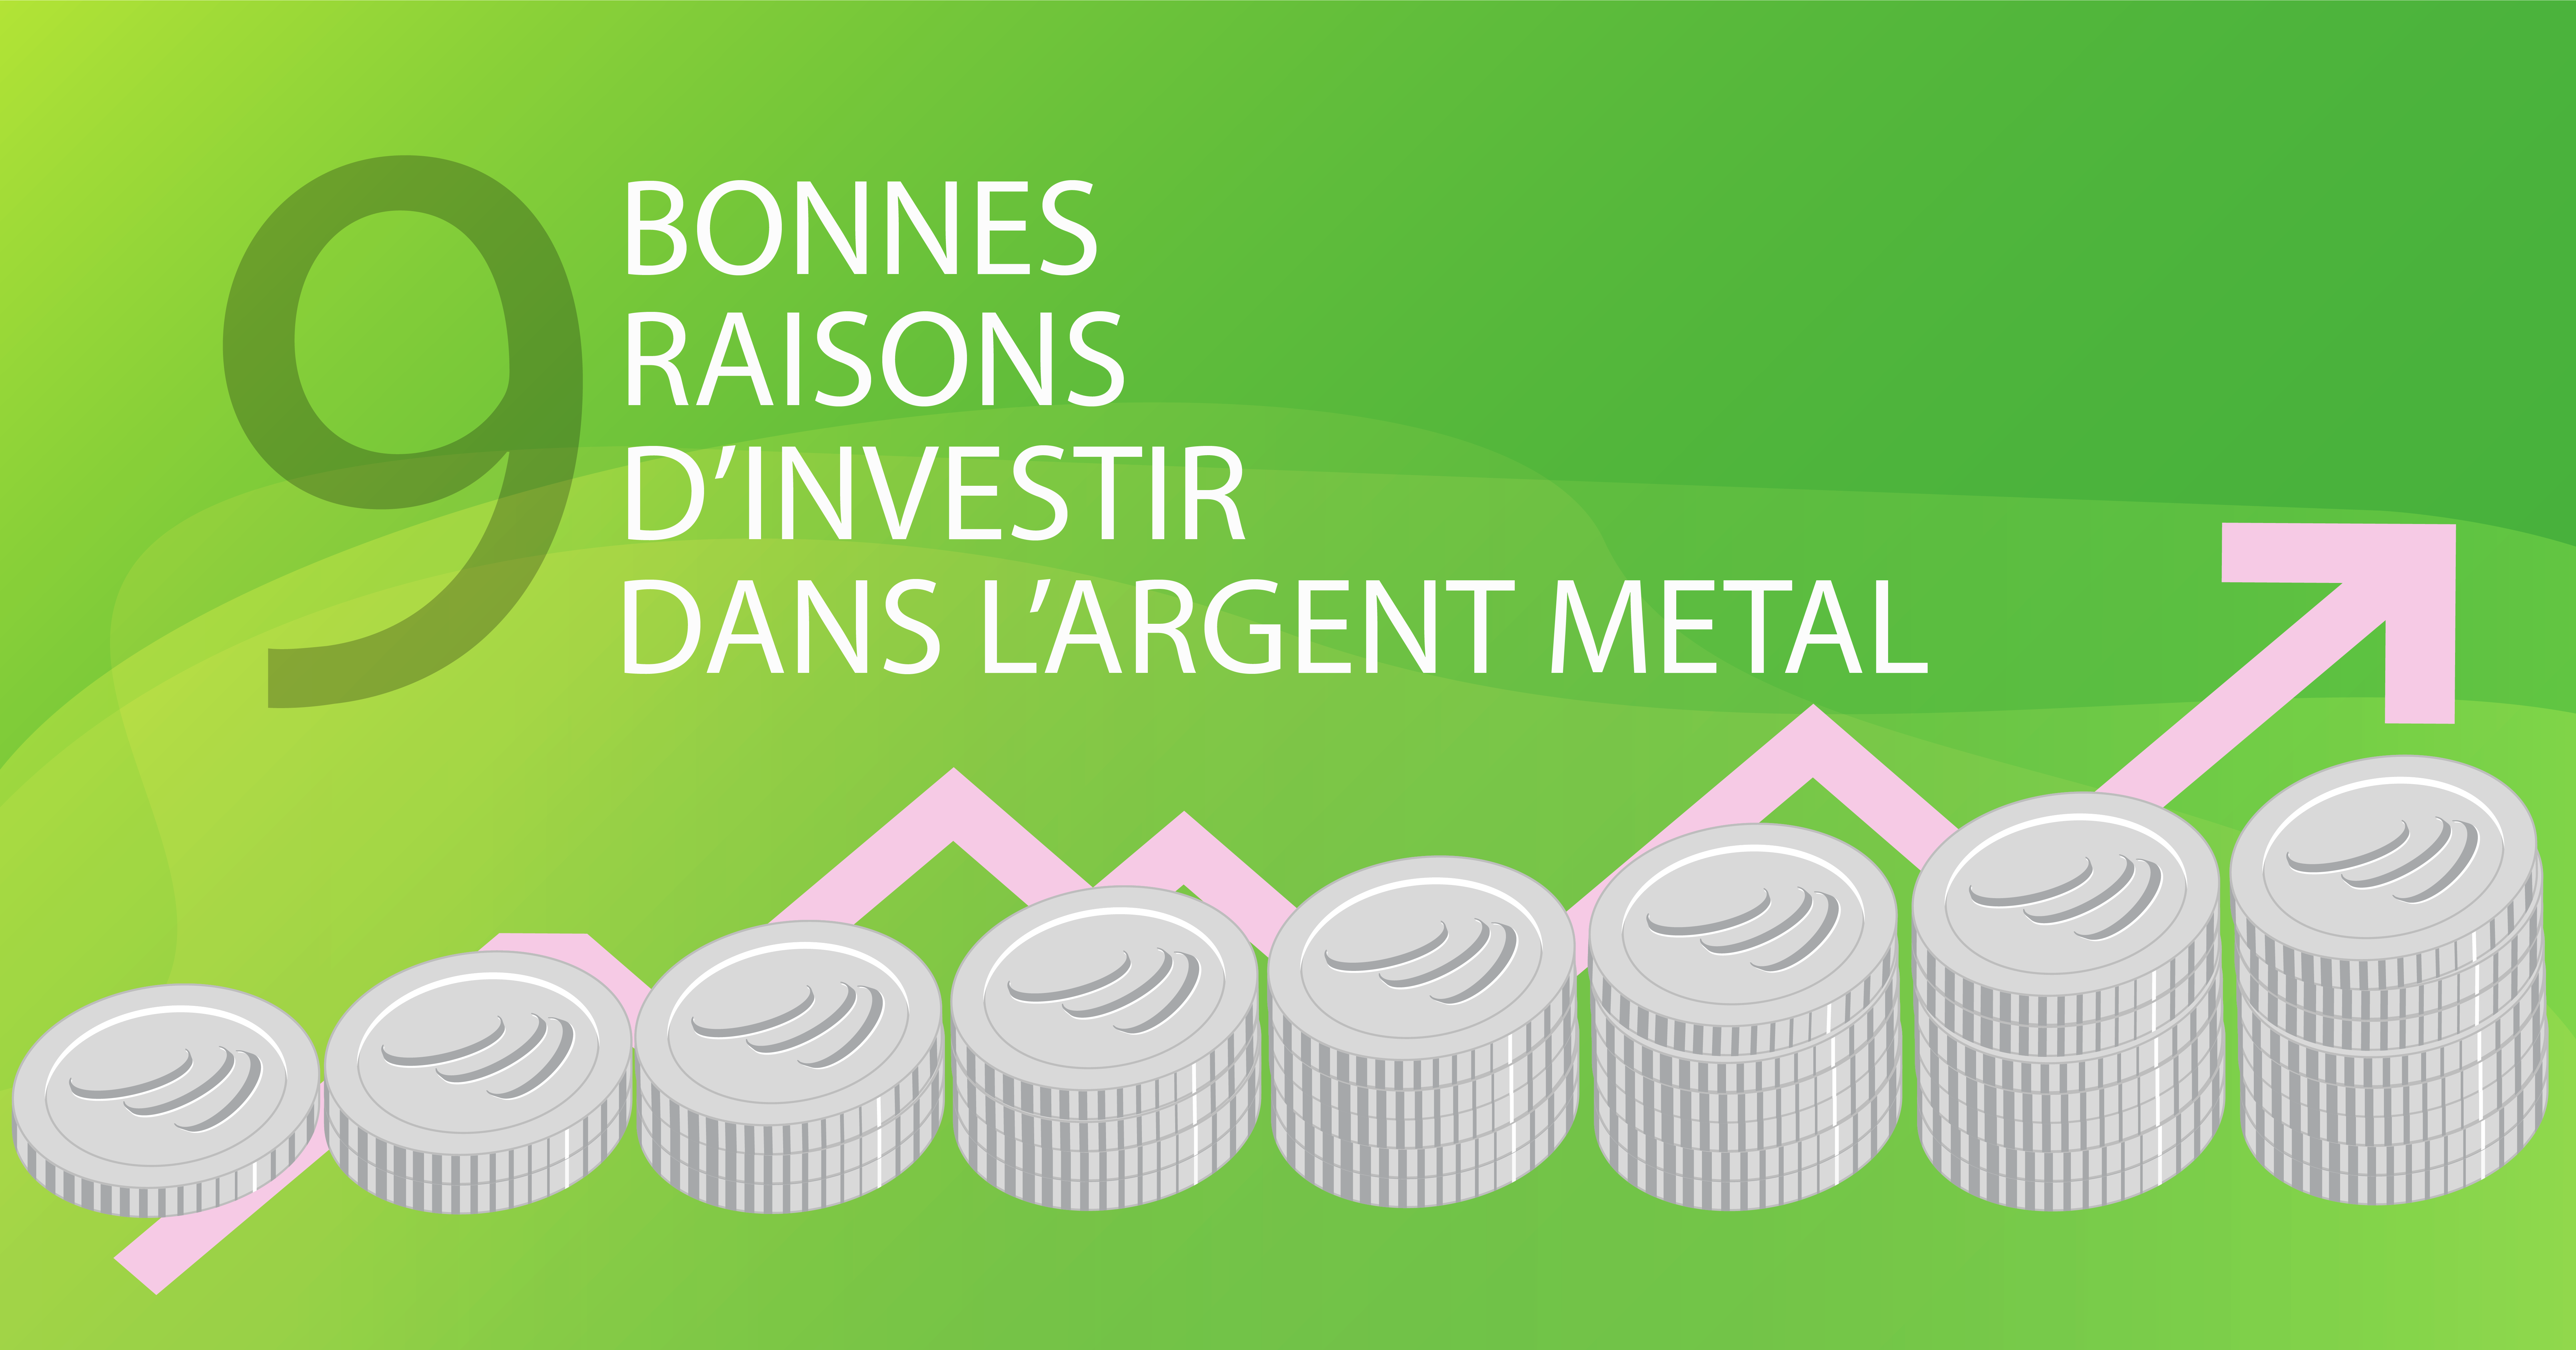 9 bonnes raisons d'investir dans l'argent métal